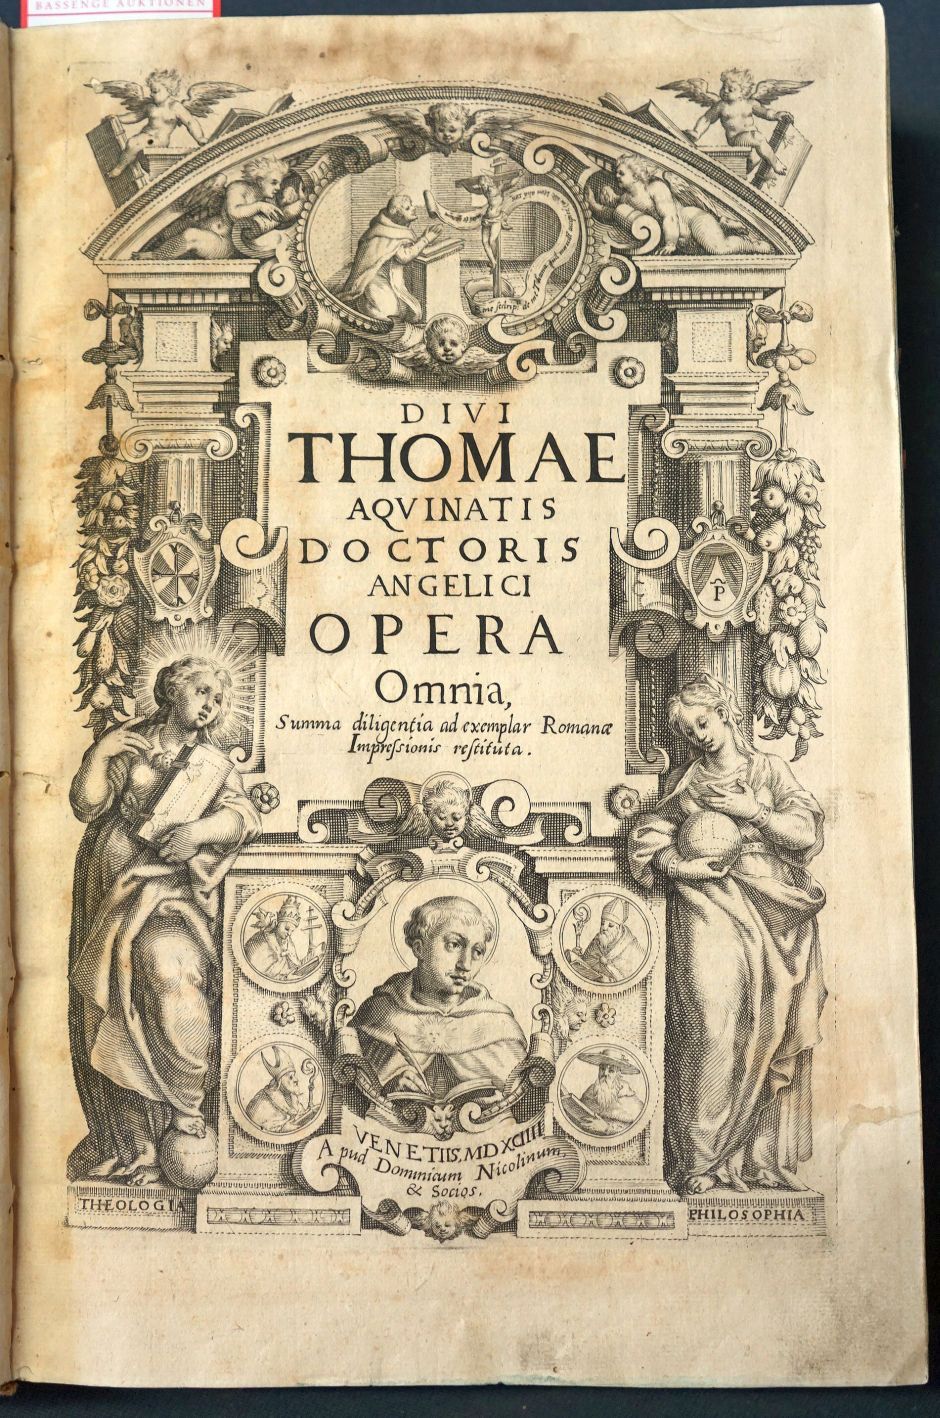 Lot 1198, Auction  115, Thomas von Aquin, Opera omnia